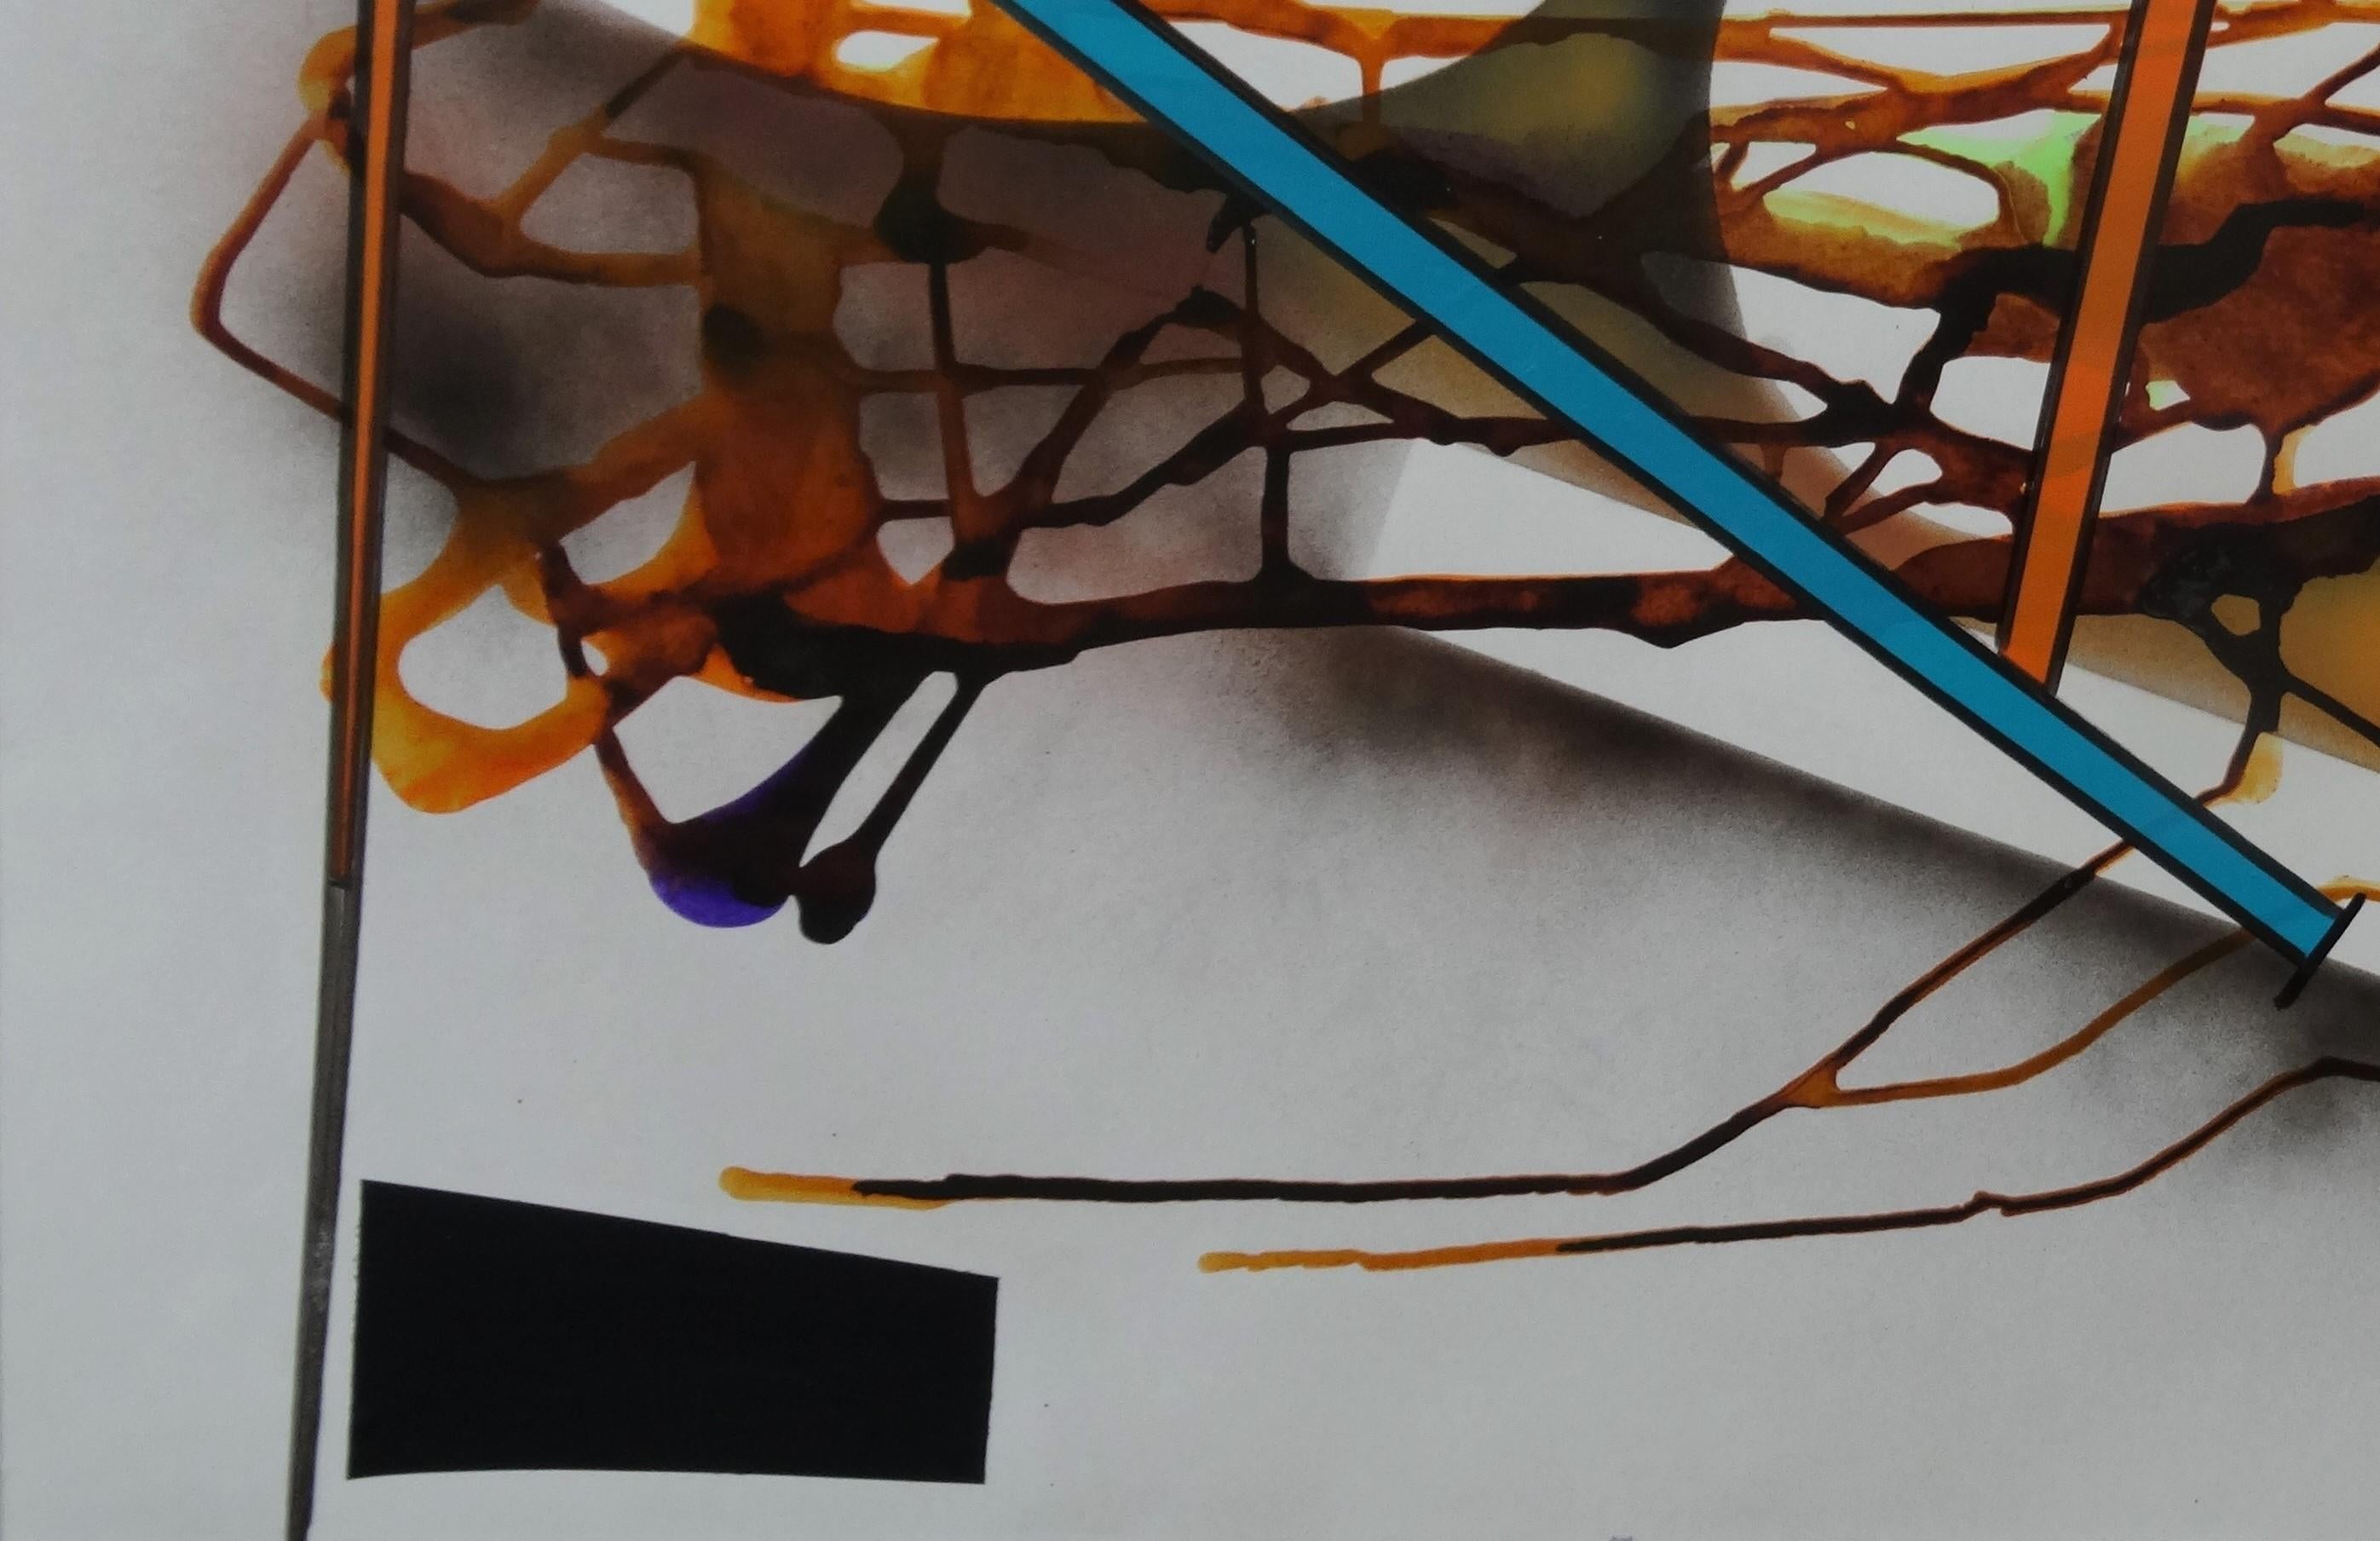 Die abstrakte Serie von großformatigen Werken in Mischtechnik ist eine Hommage an die großen Modernisten und abstrakten Expressionisten wie Mondrian, Kandinsky, Still und Motherwell. 

Māris Abiļevs (geboren am 23. April 1956 in Kasachstan) ist ein